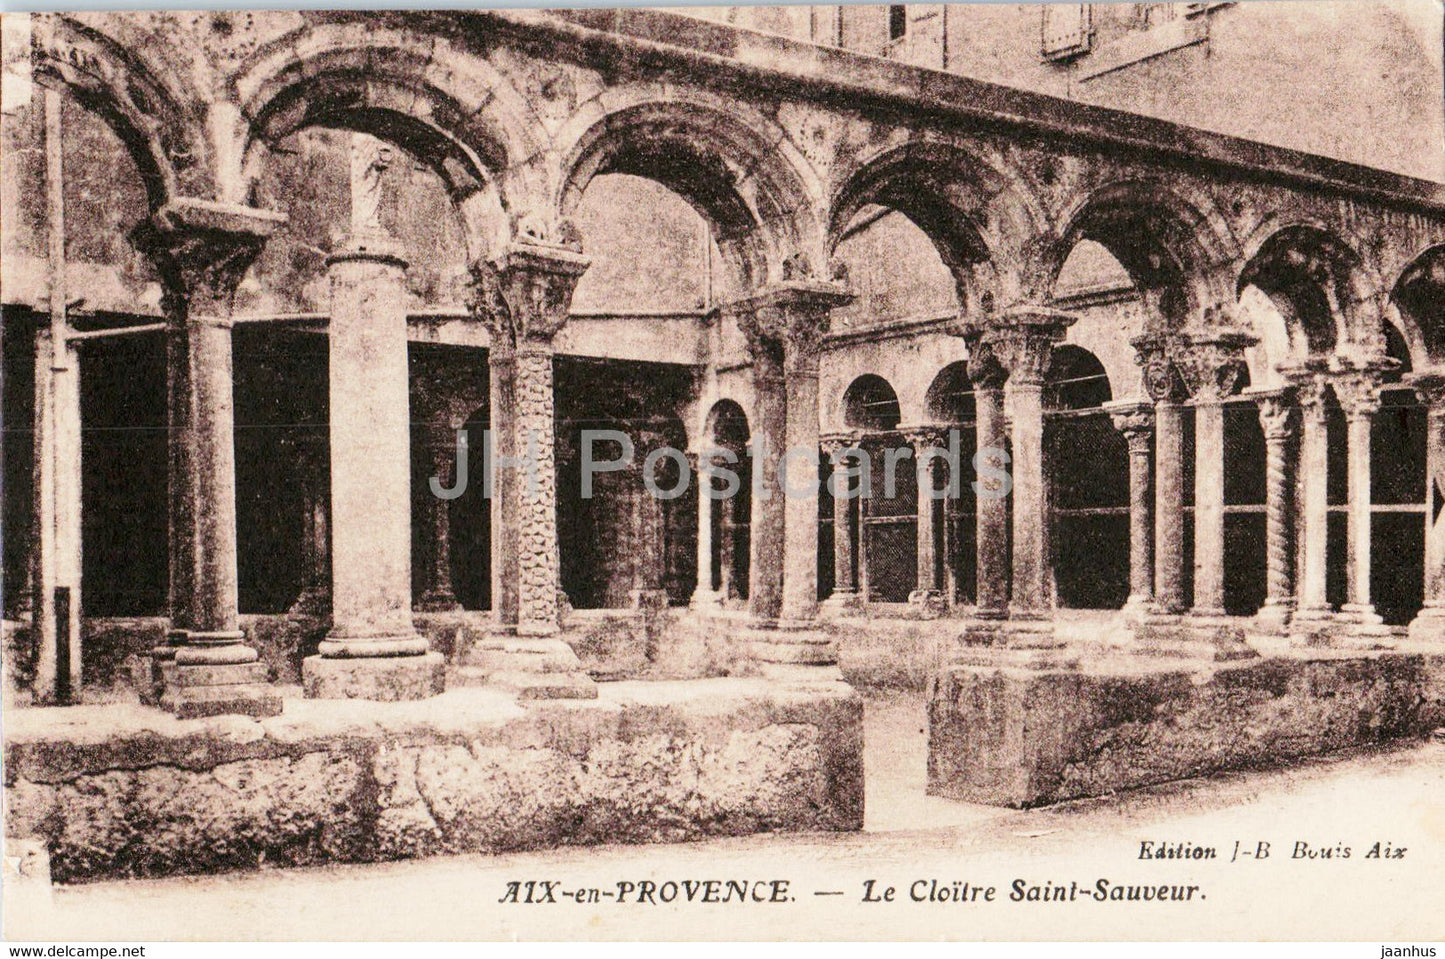 Aix en Provence - Le Cloitre Saint Sauveur - cloister - old postcard - France - unused - JH Postcards